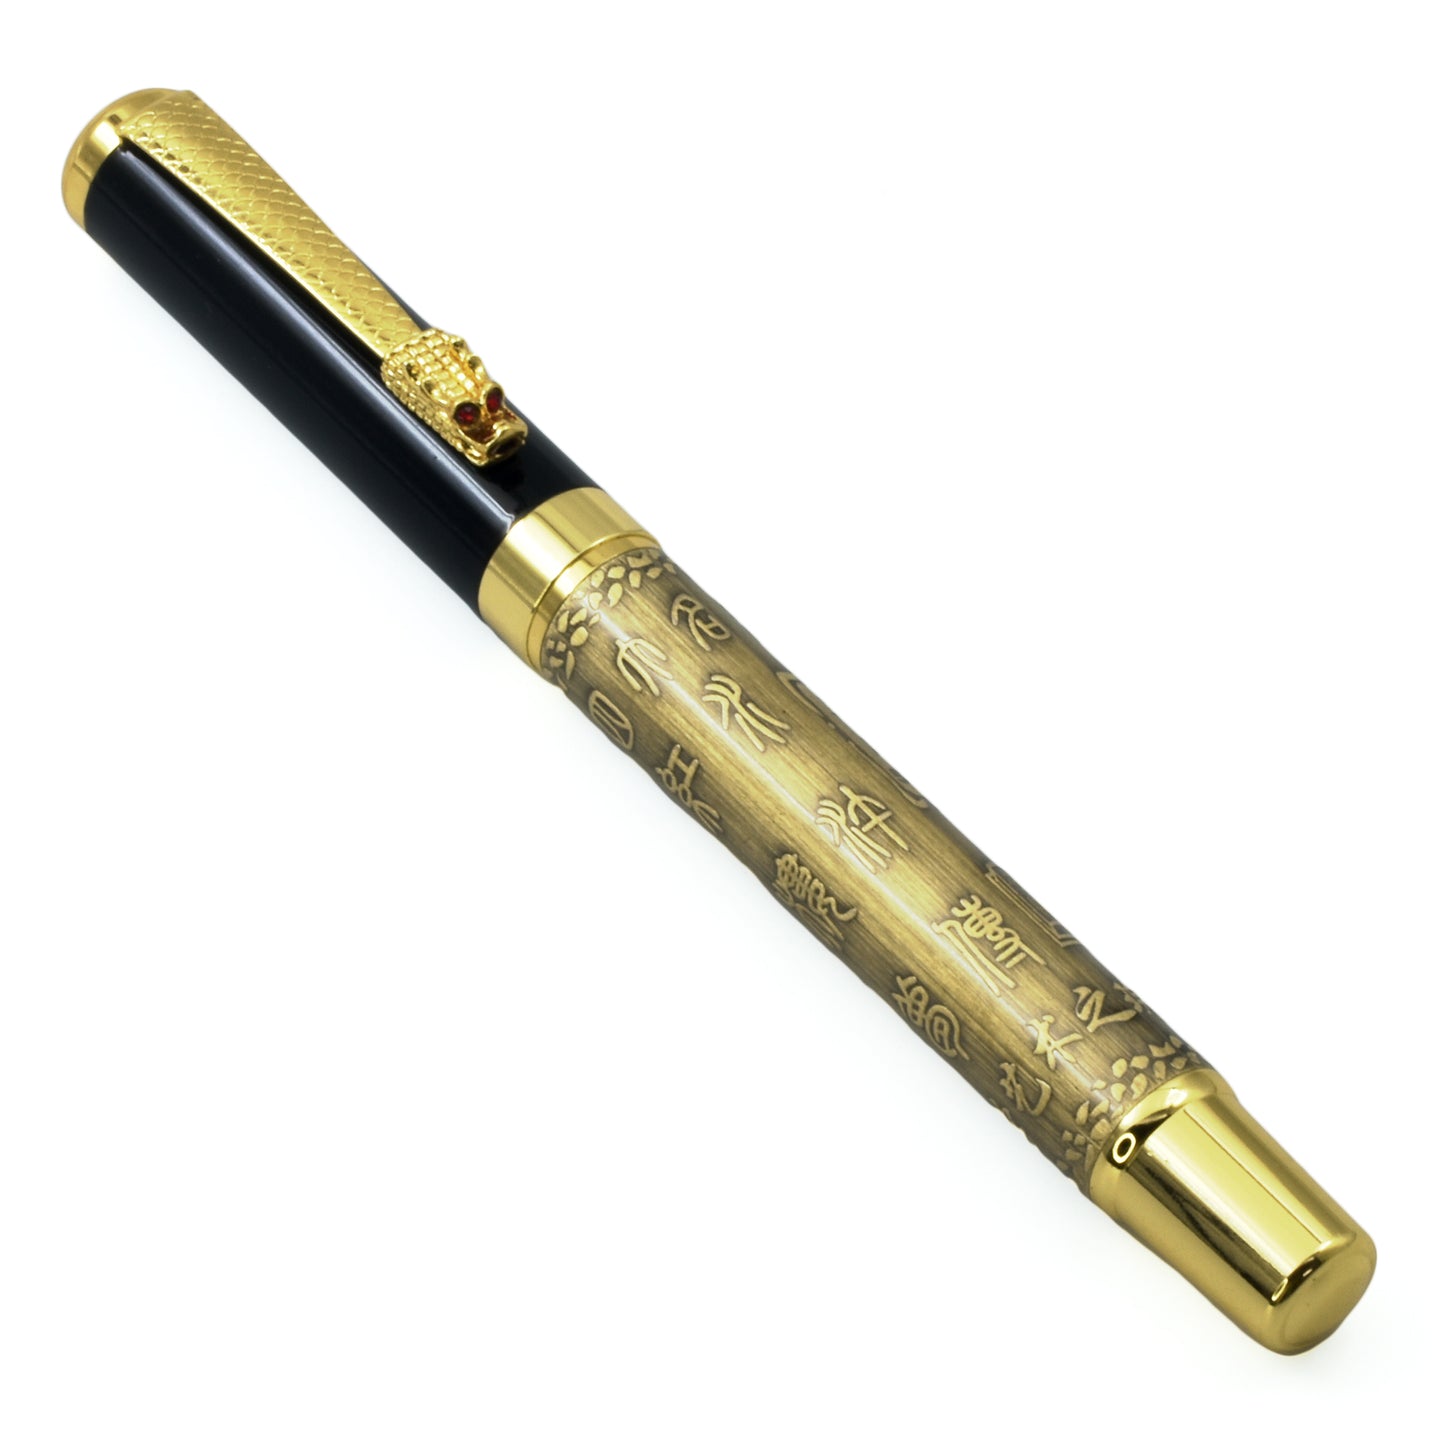 Luxury Imported Ink Pen | Ink Pen 3002 | + Hero ink 50ml